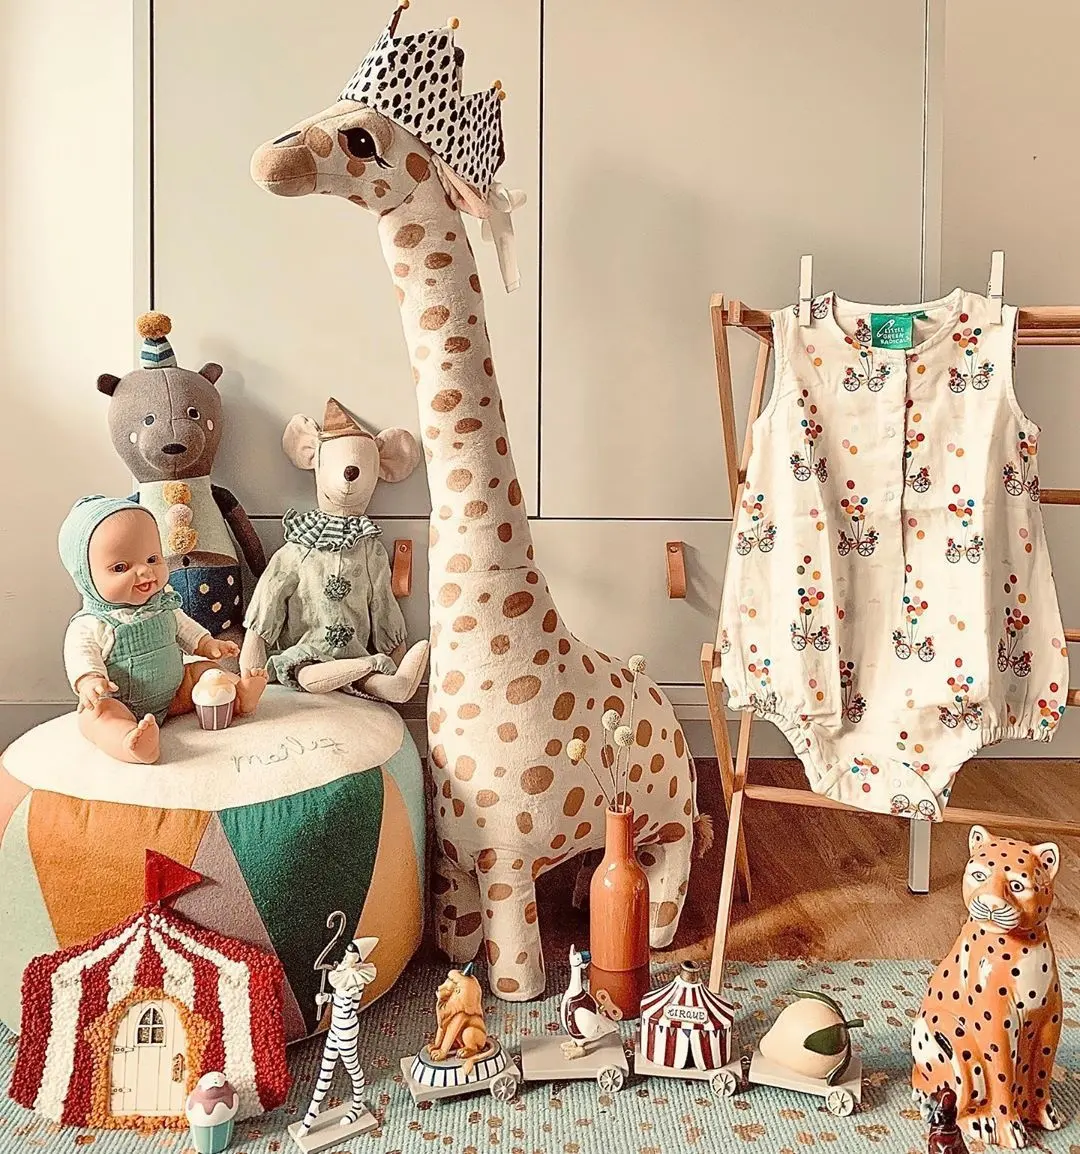 67cm tamanho grande simulação girafa, brinquedos de pelúcia, macio, pelúcia, animal, girafa, boneca de dormir, brinquedo para meninos, meninas, presente de aniversário, crianças, brinquedo